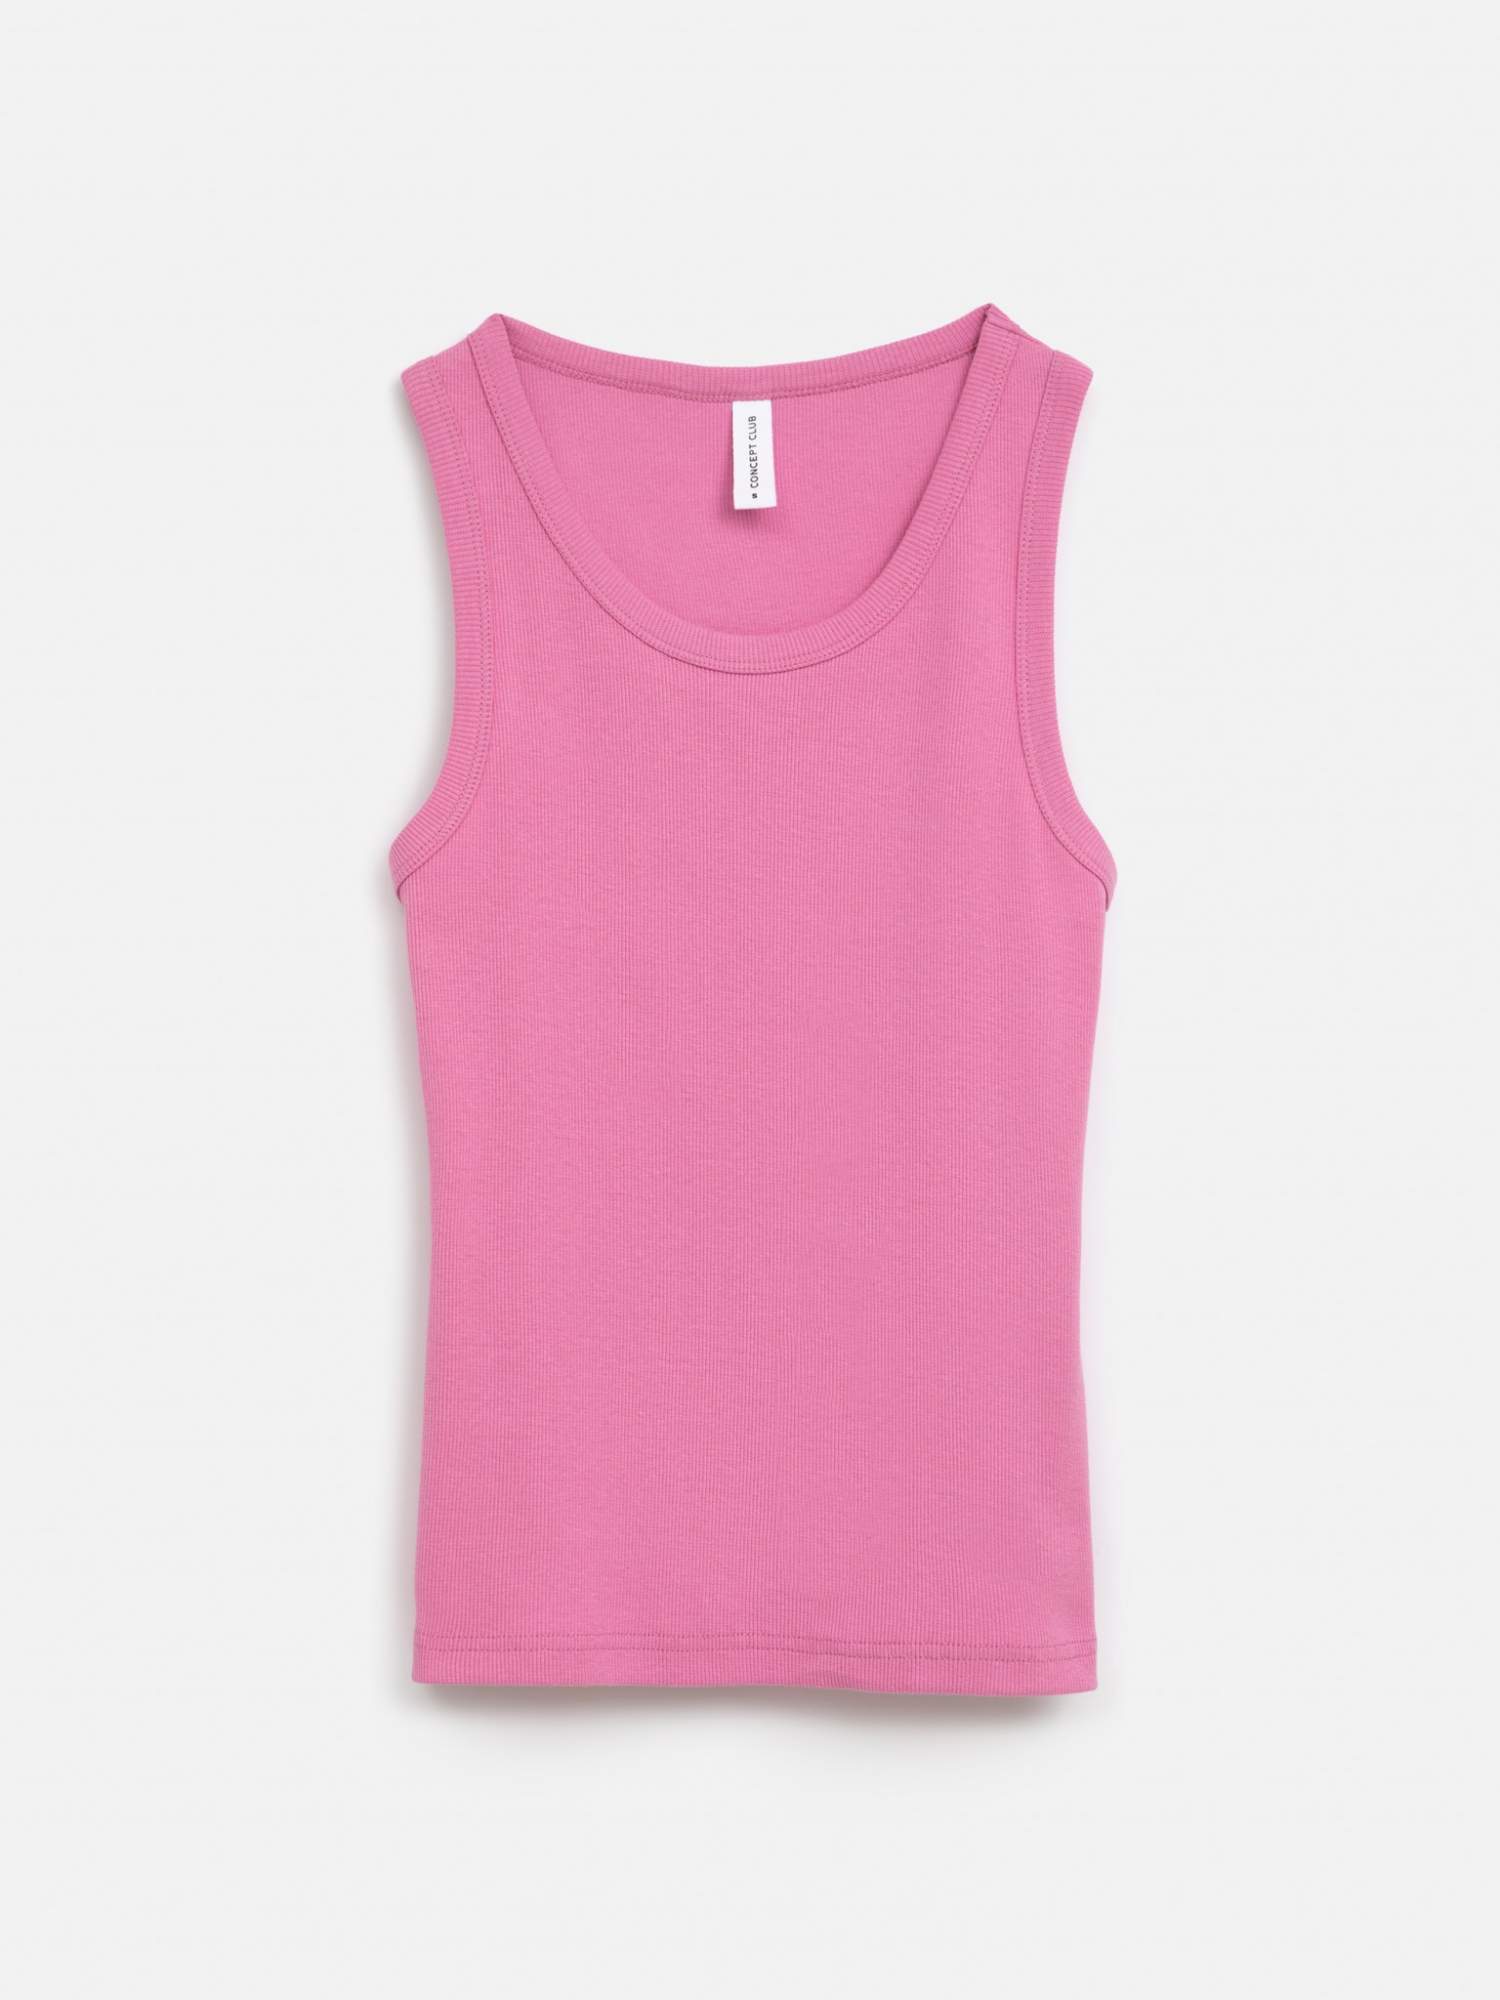 Заказать женские базовые майки и топы pink bralettes & bra tops, цены на  маркетплейсе, женские базовые майки и топы pink bralettes & bra tops